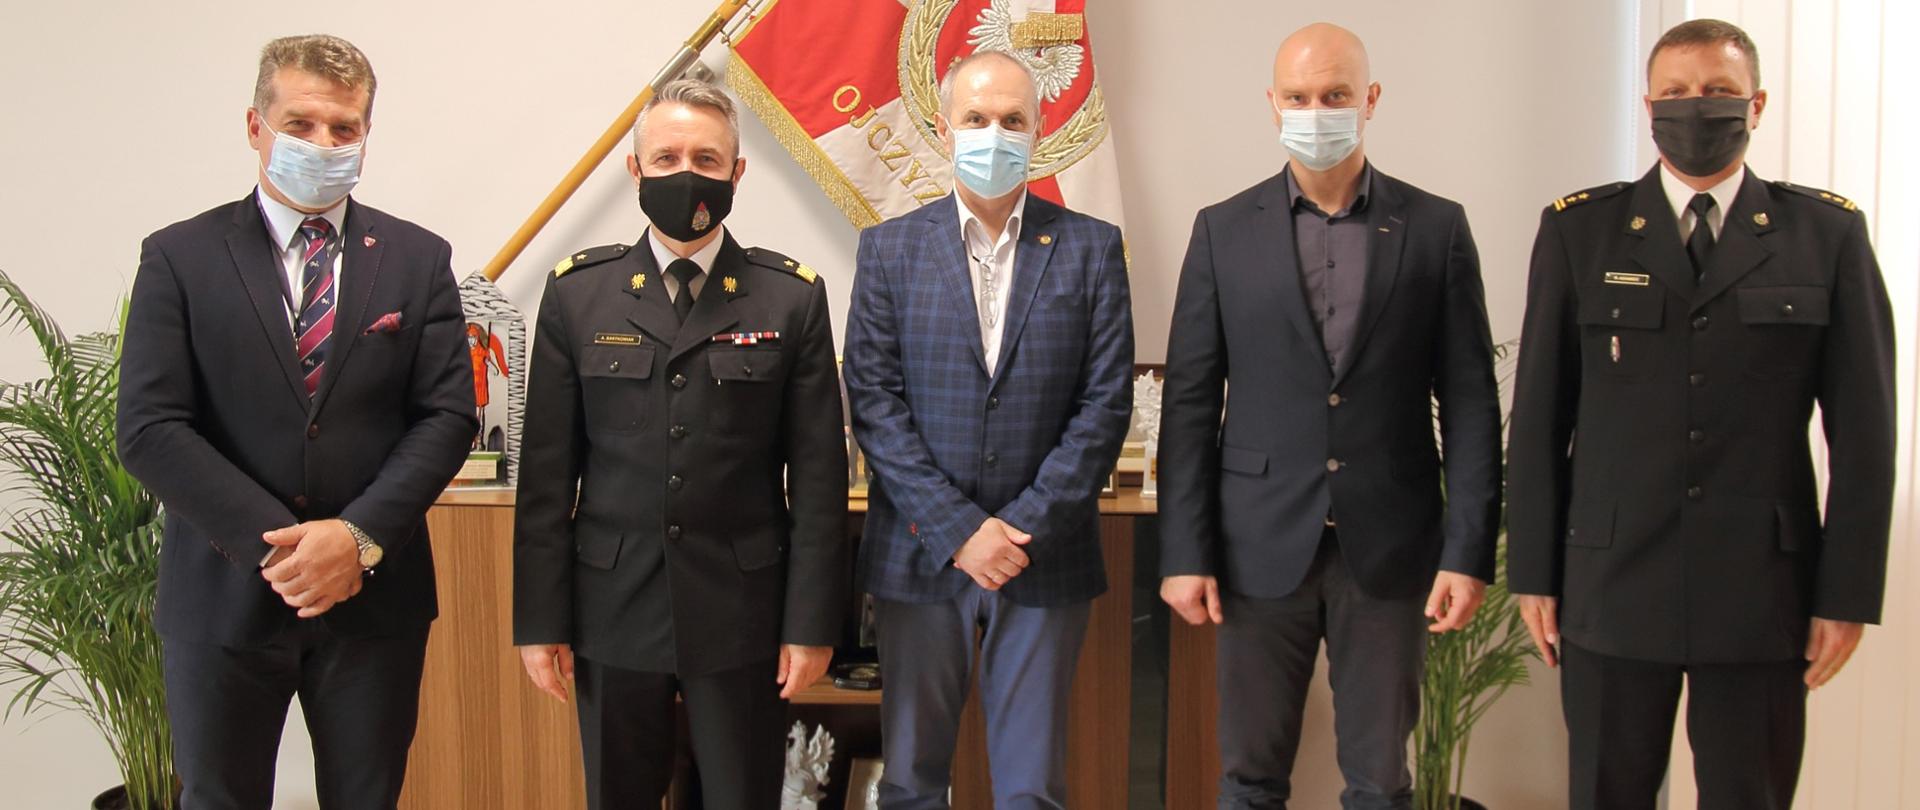 Spotkanie komendanta głównego PSP z przewodniczącymi central związków zawodowych – na zdjęciu pięć osób w tym dwóch oficerów PSP – w środku nadbryg. Andrzej Bartkowiak komendant główny PSP.